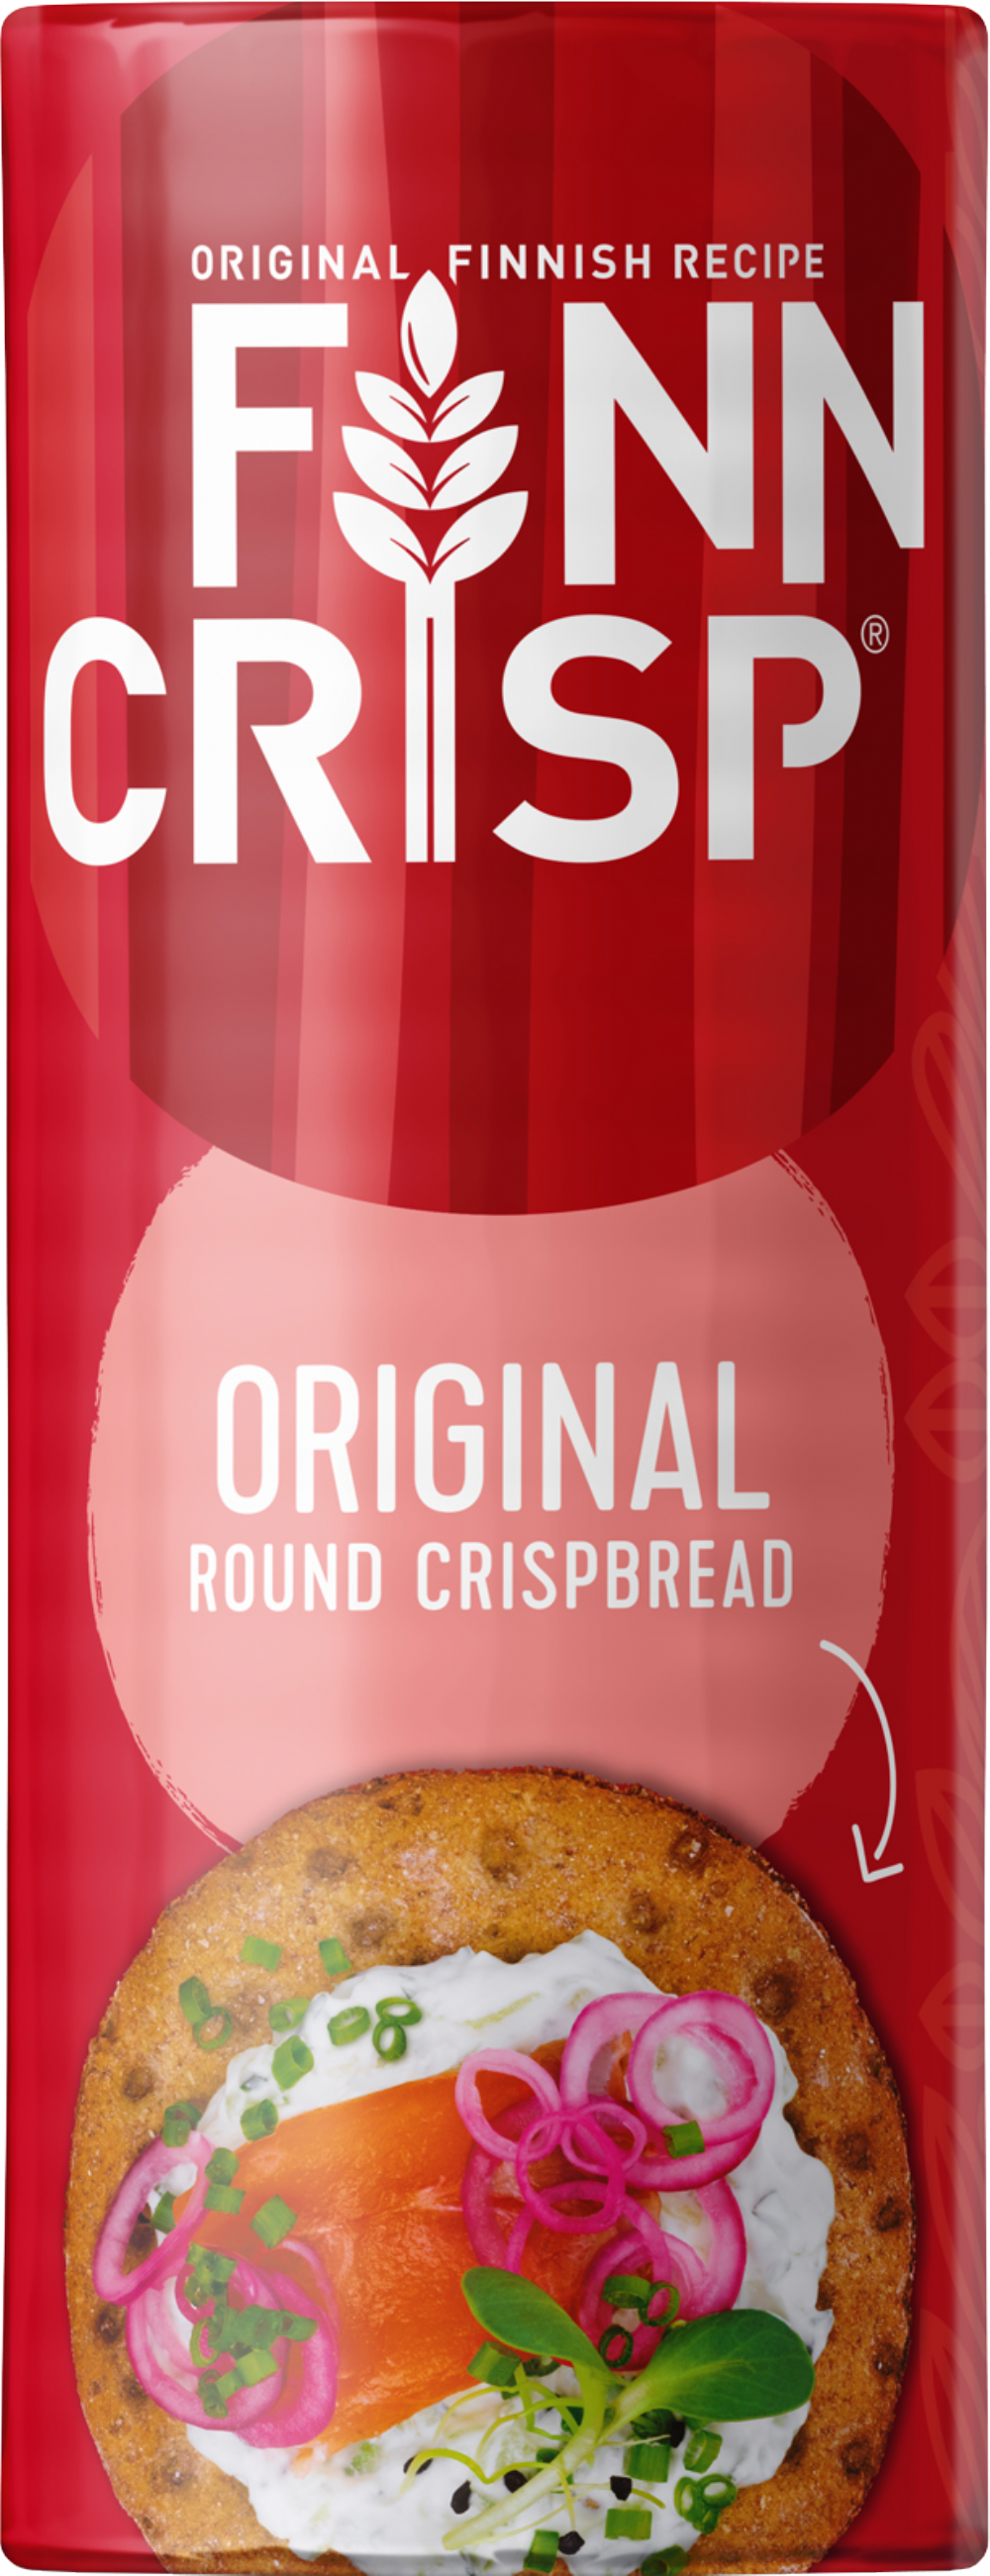 FINN CRISP Original Round Crispbread 250g